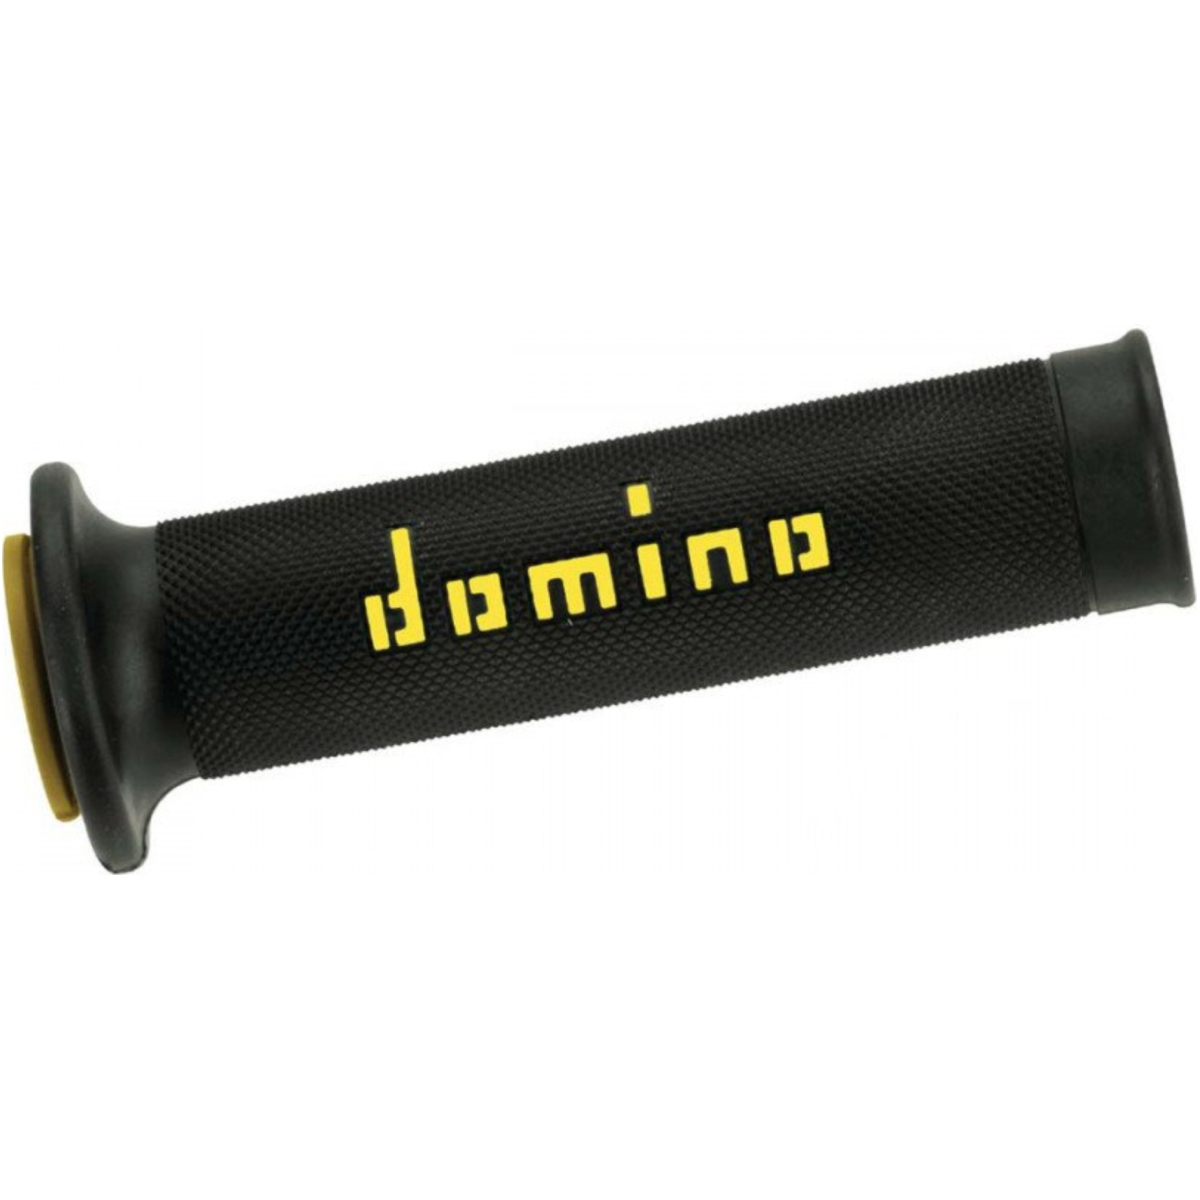 Domino a01041c4740b7-0 lenkergriffe griffgummi schwarz/gelb  a01041c4740b70 von Domino